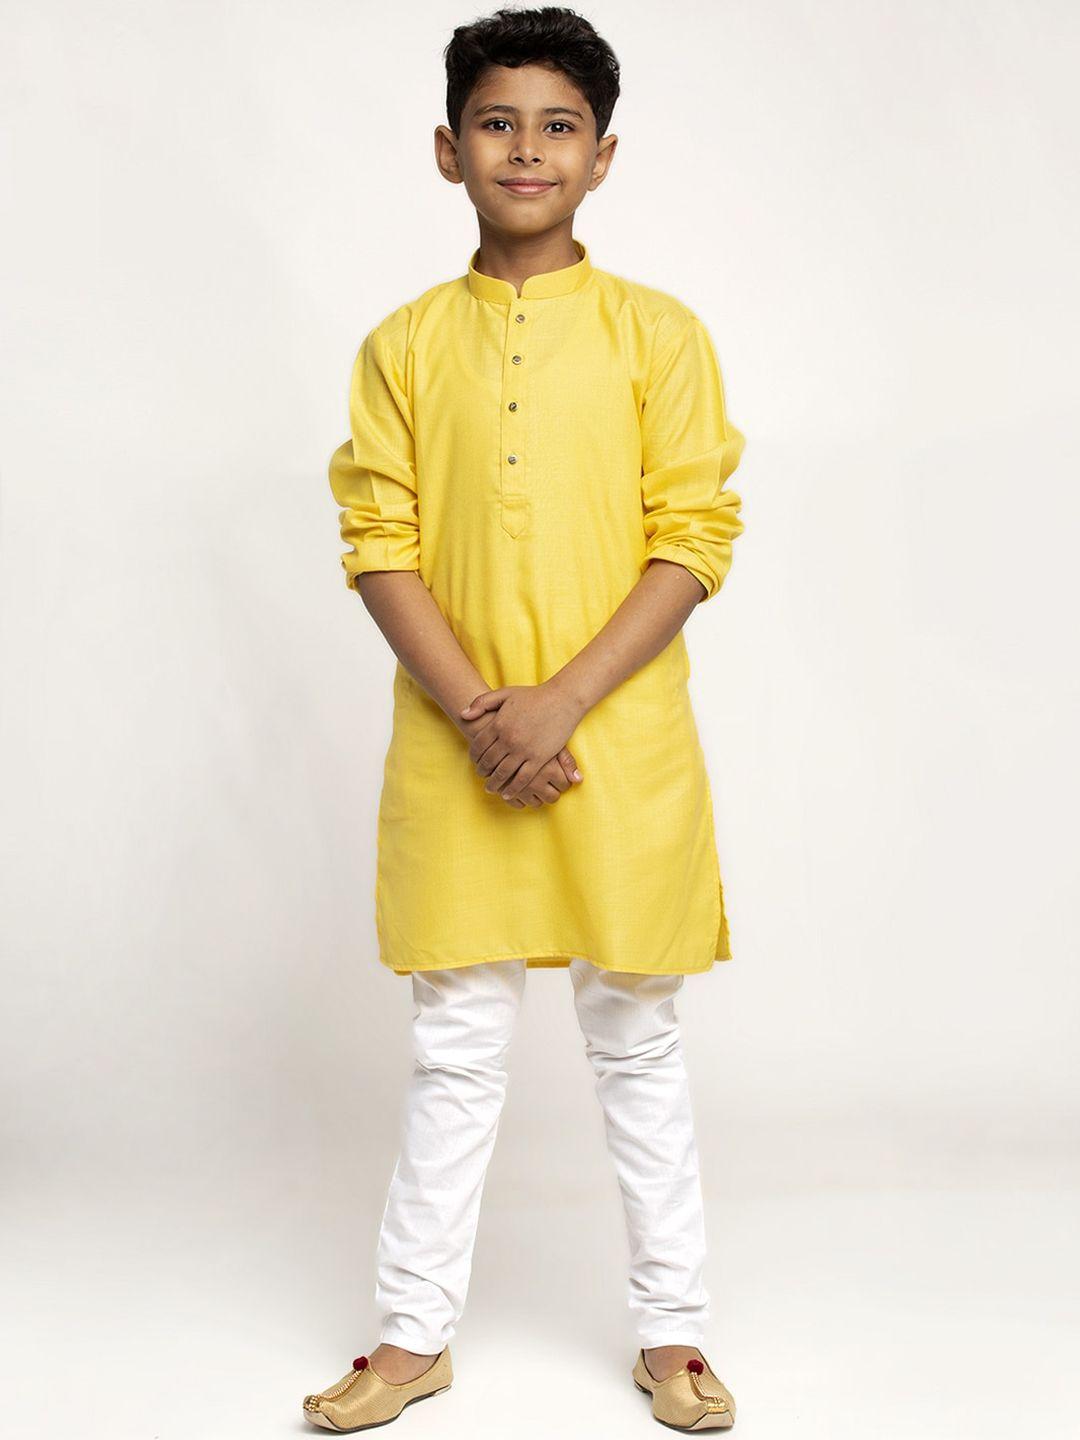 kraft india boys yellow & white cotton kurta with pyjamas